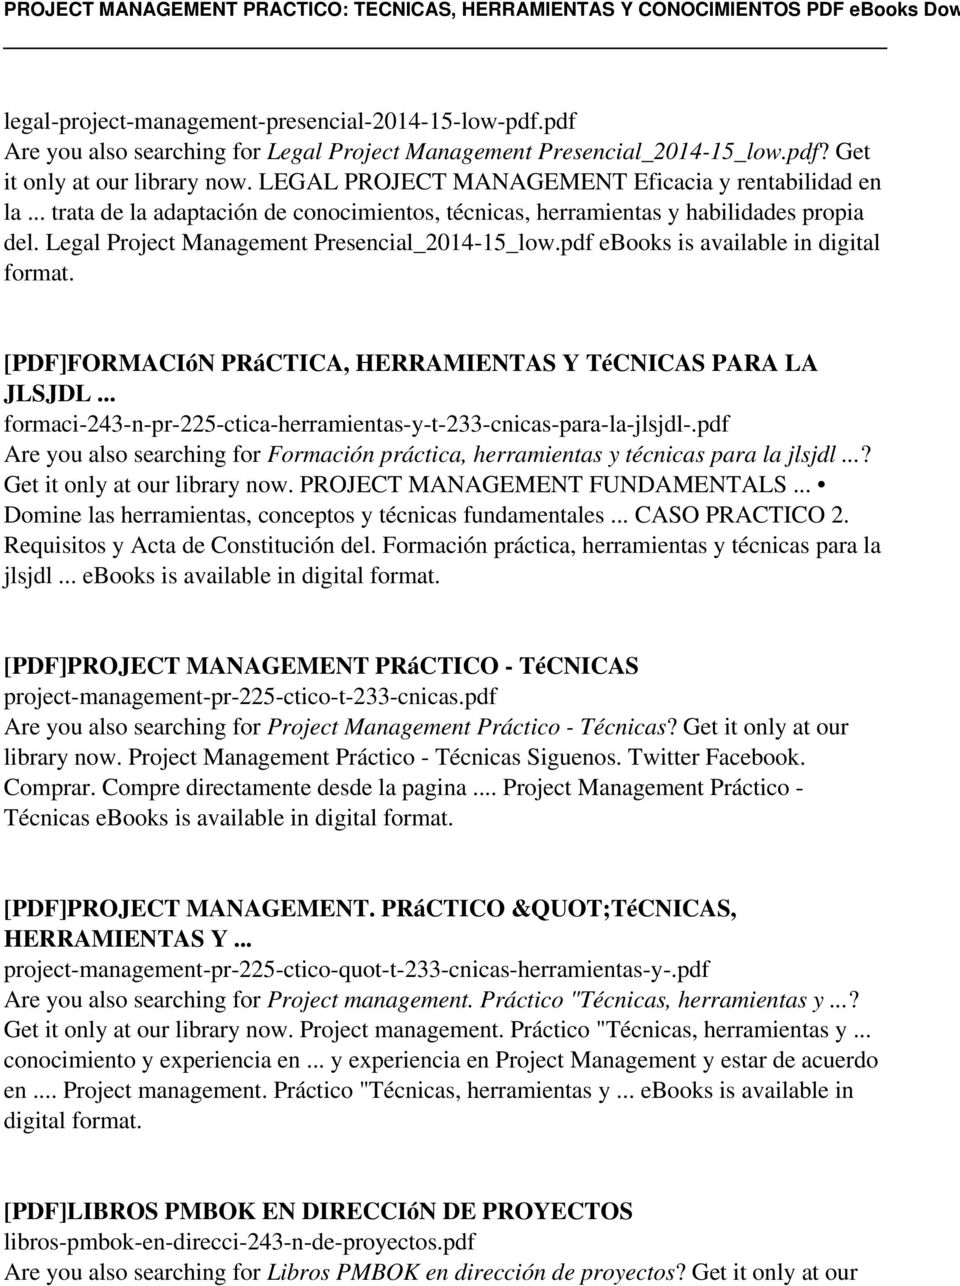 pdf ebooks is available in digital [PDF]FORMACIóN PRáCTICA, HERRAMIENTAS Y TéCNICAS PARA LA JLSJDL formaci-243-n-pr-225-ctica-herramientas-y-t-233-cnicas-para-la-jlsjdl-.